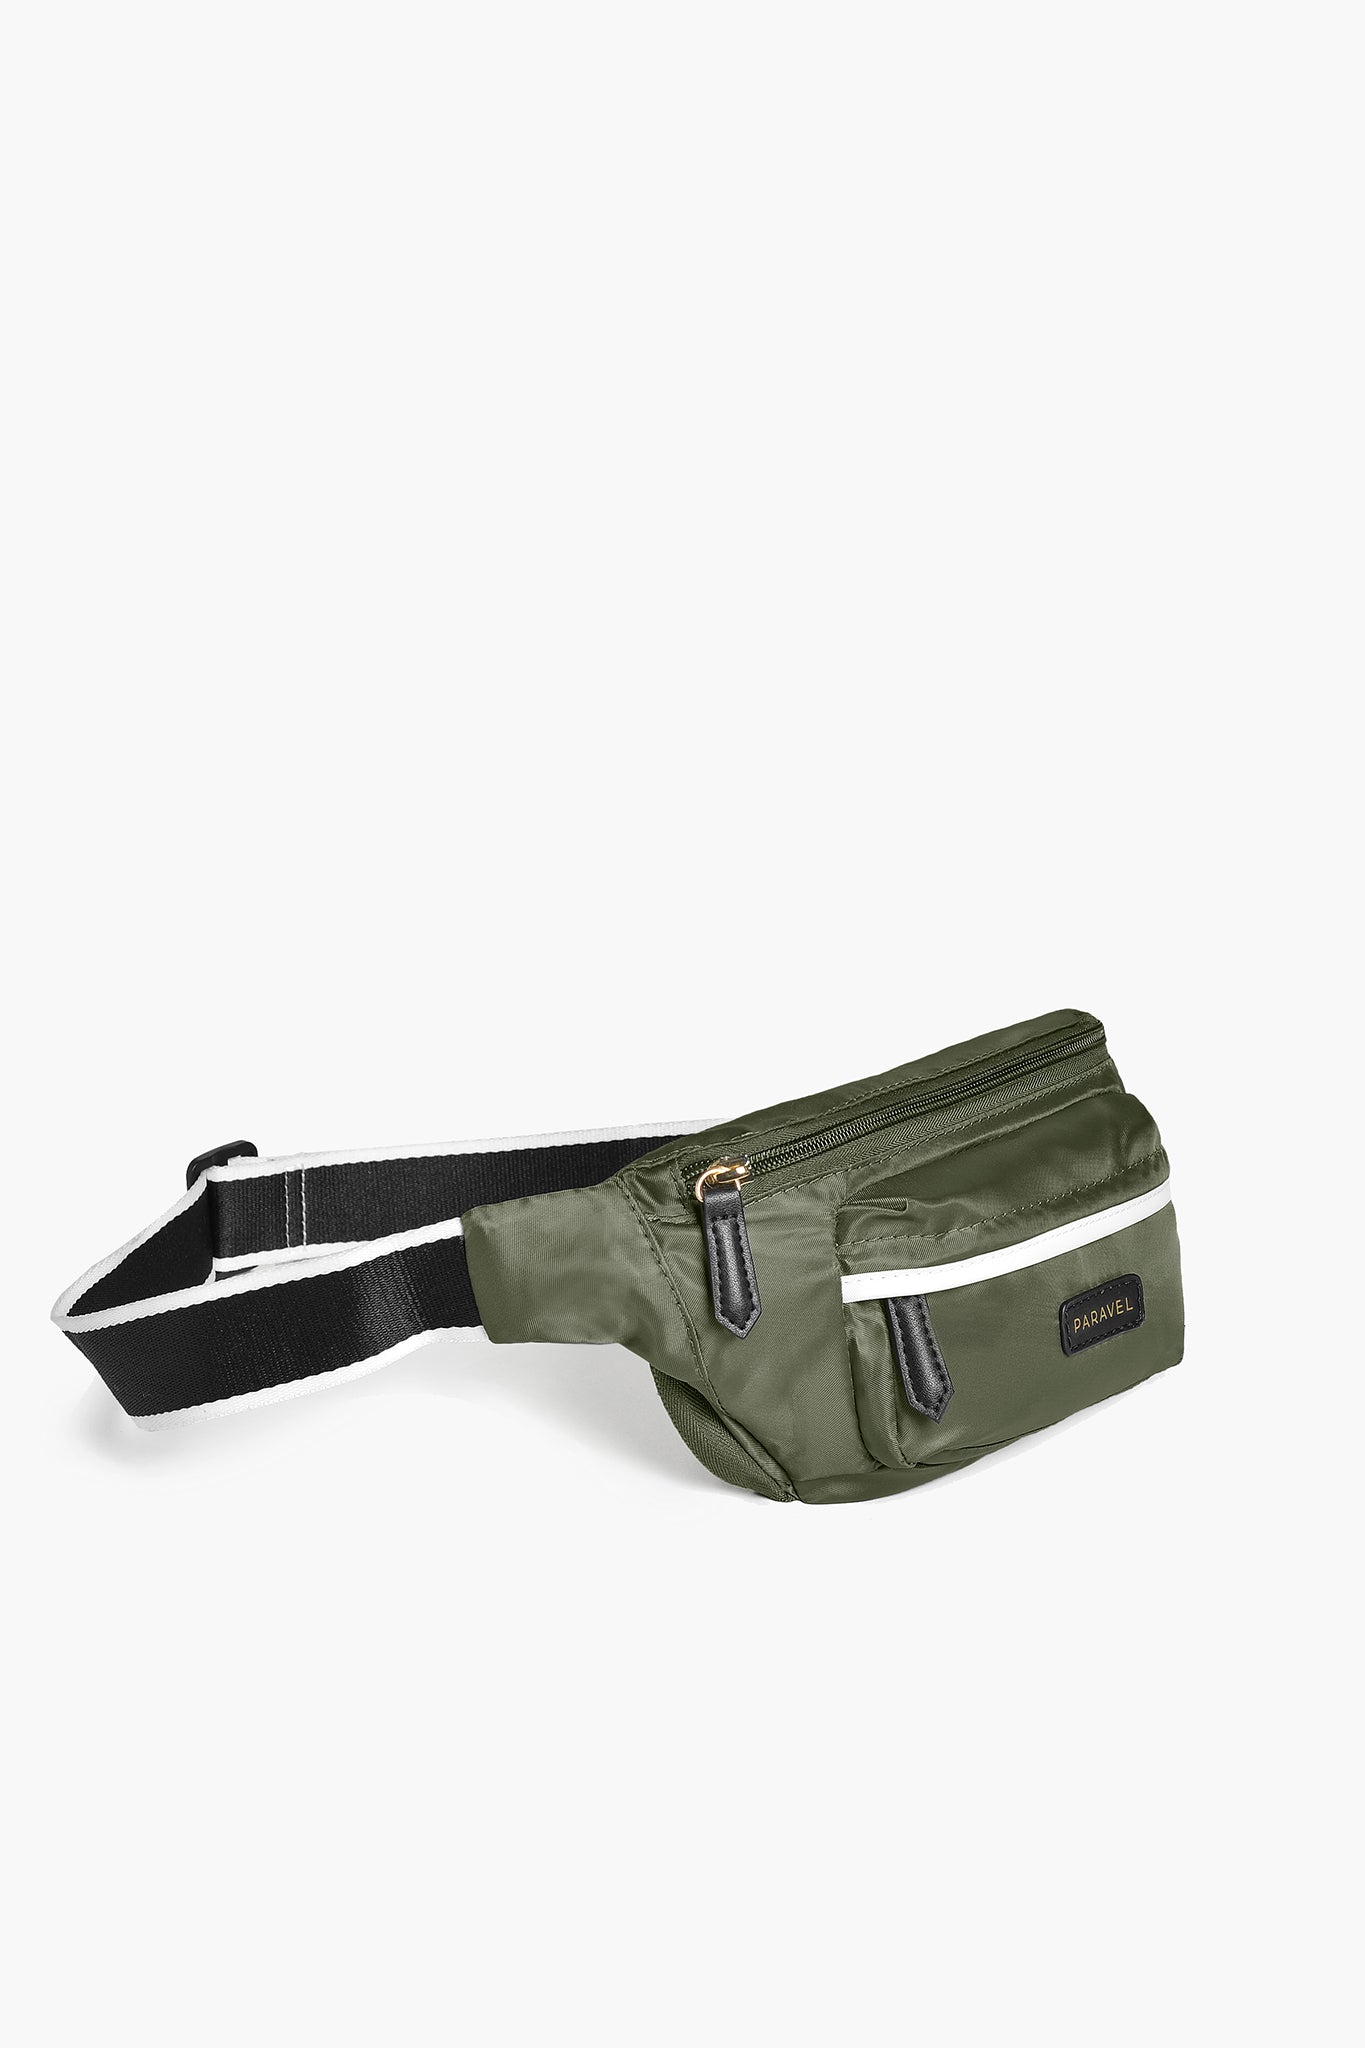 Paravel Fold-Up Belt Bag